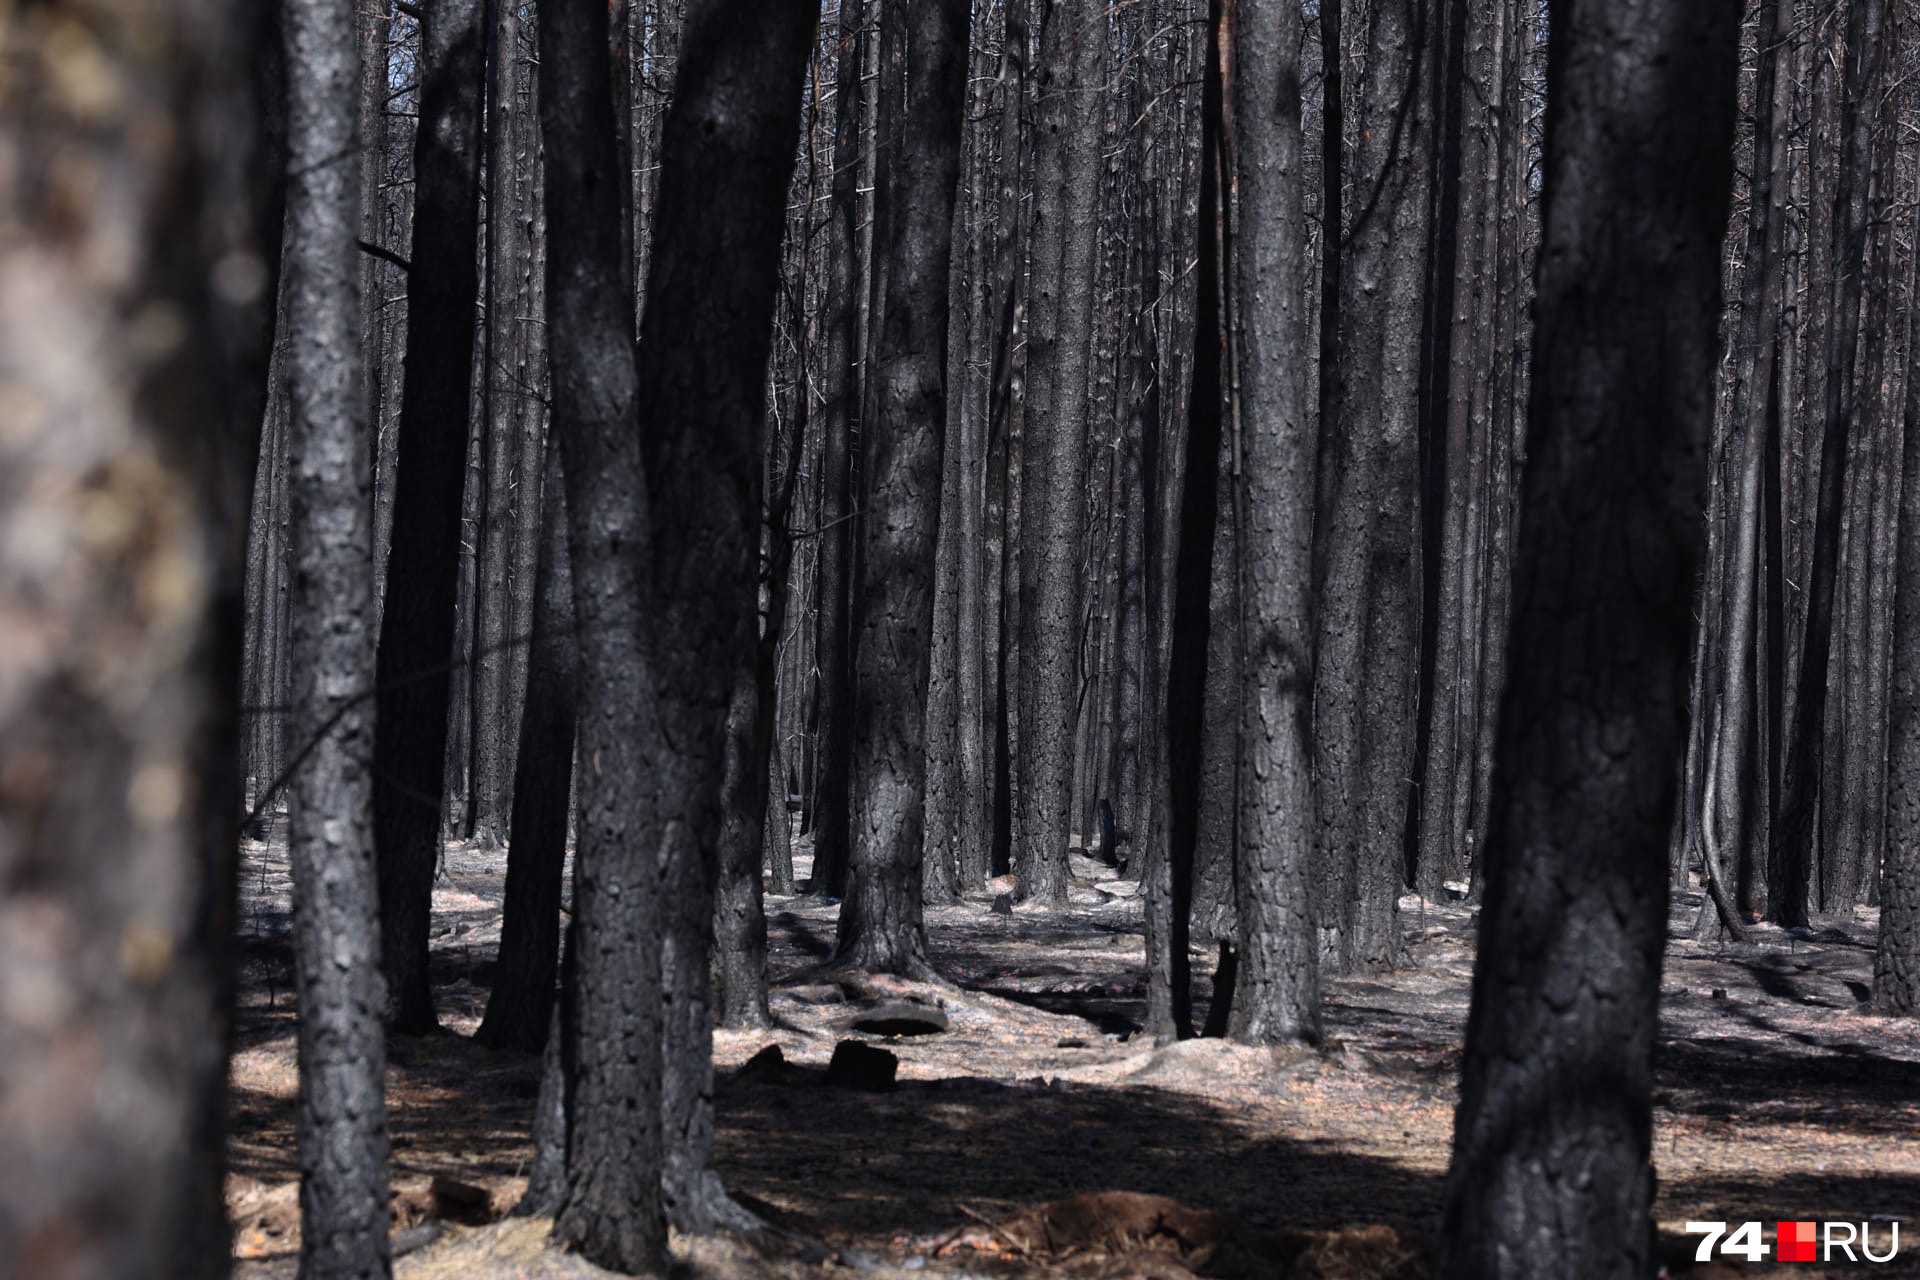 Выгоревшую территорию должны расчистить и засадить другими деревьями